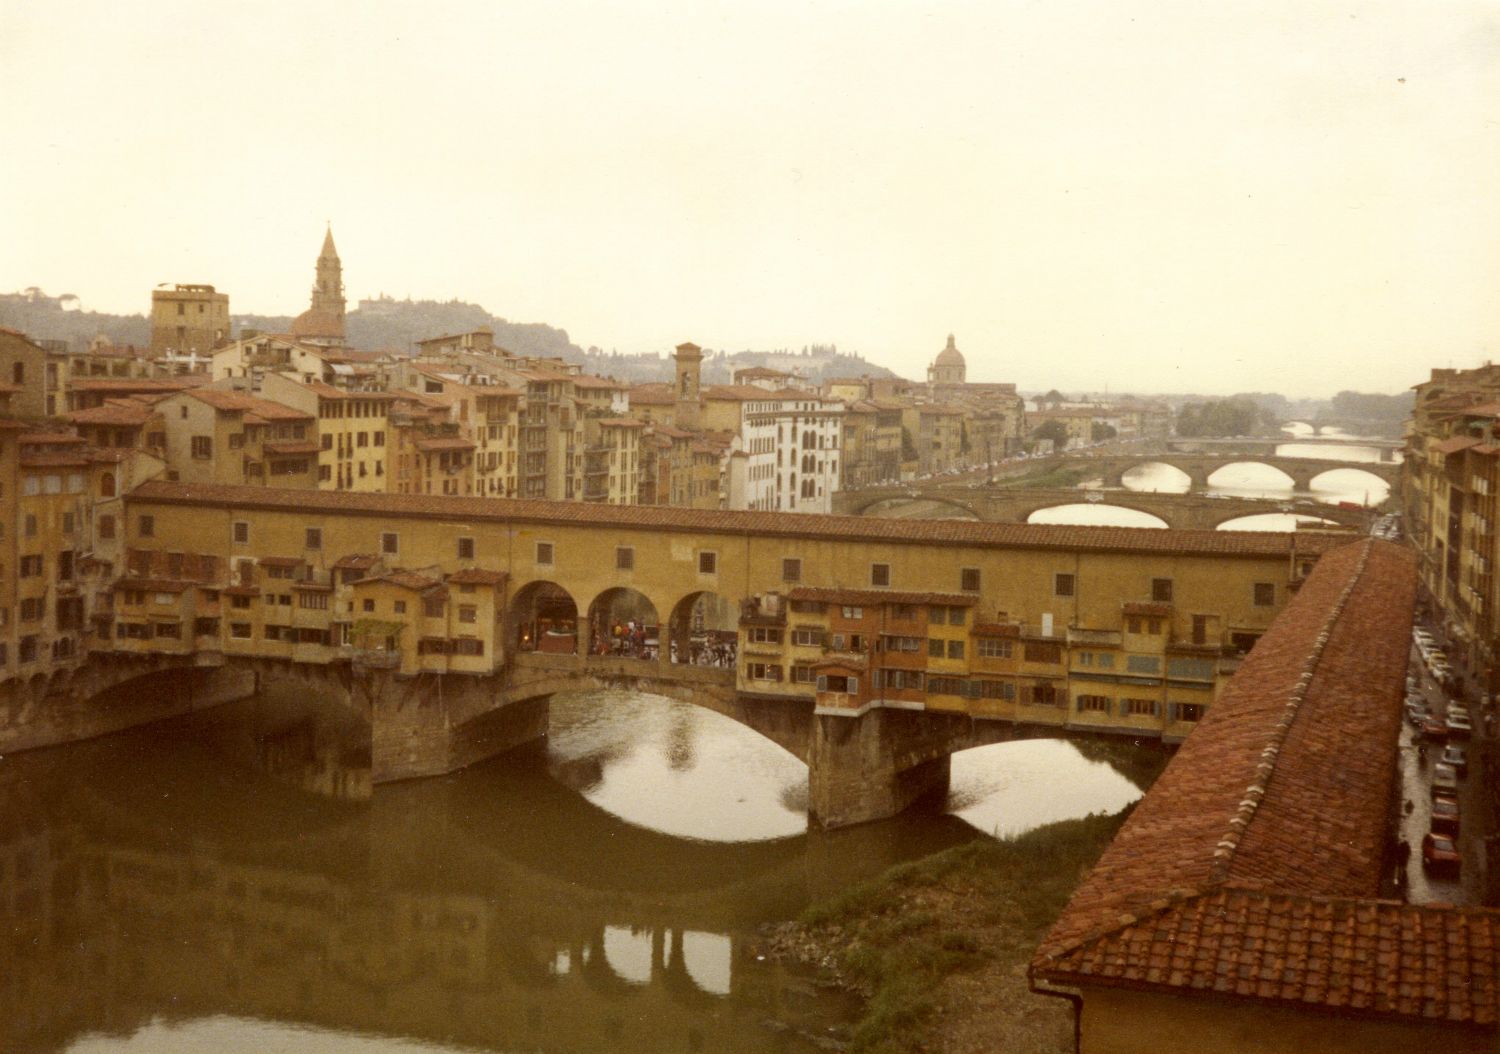 Næste dag går vi i Uffizi i Firenze og ser på kunst (og udsigten)...